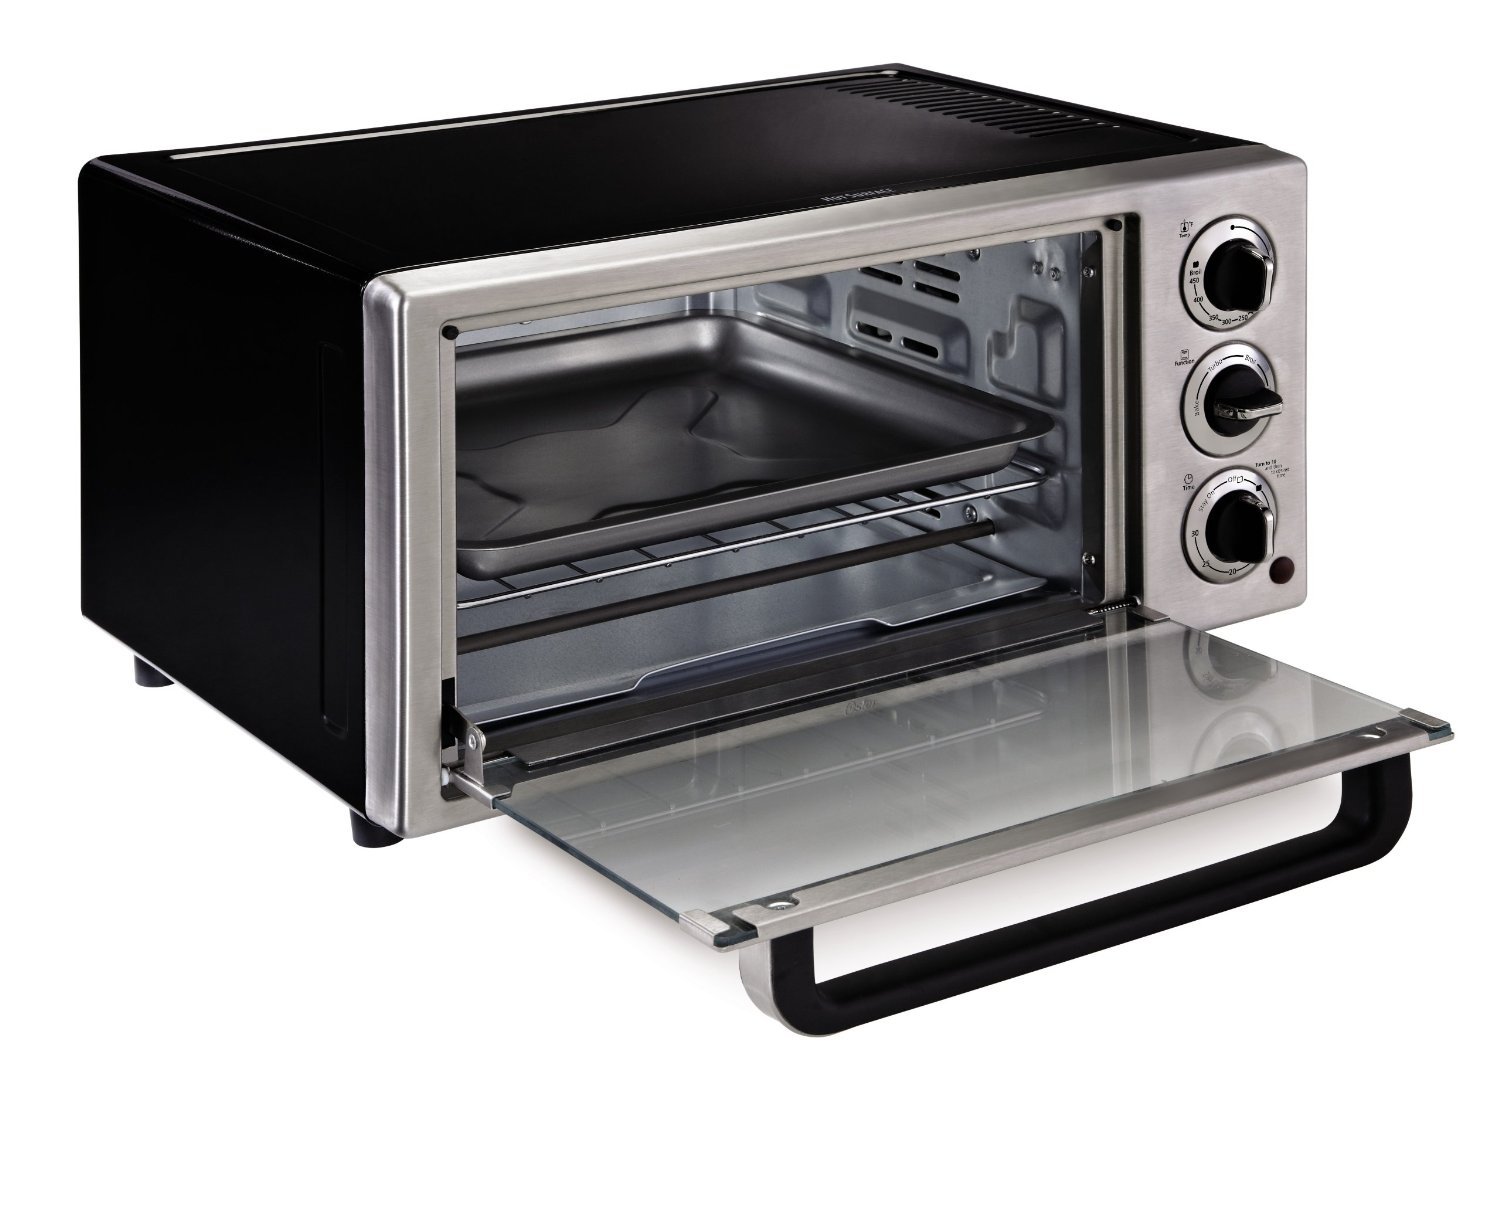 Oster TSSTTVF815 6-Slice Toaster Oven